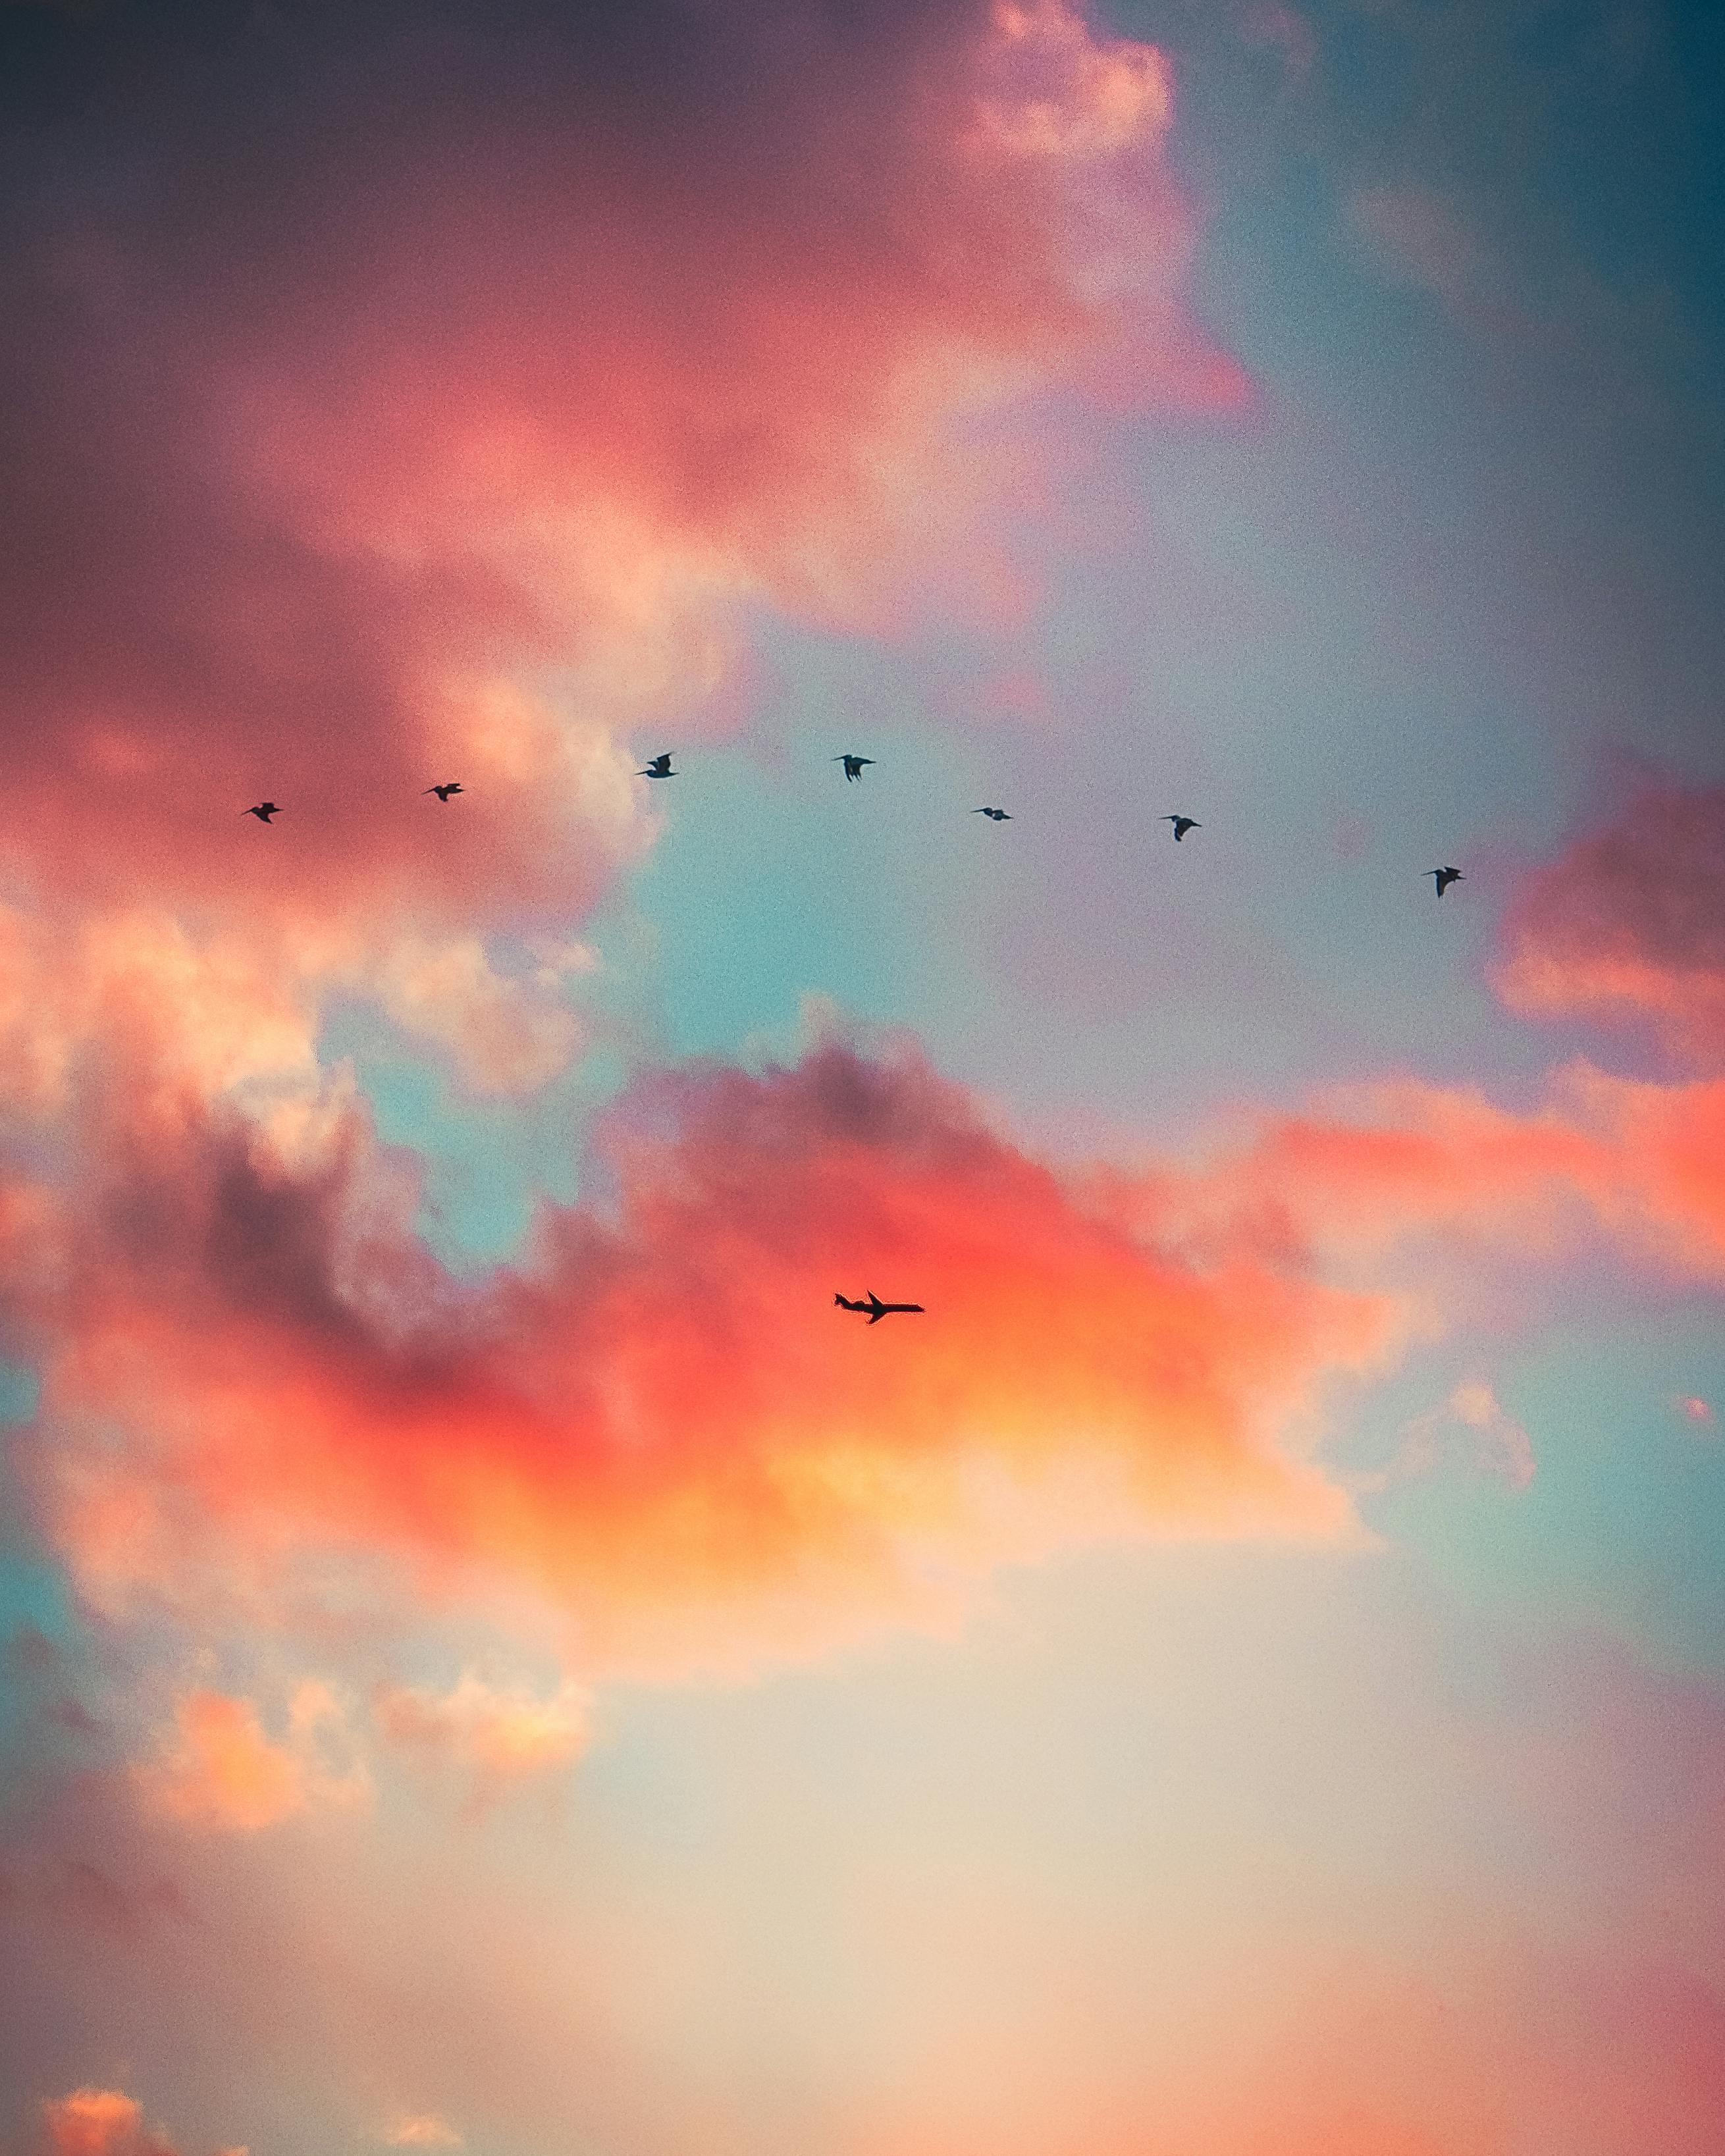 Hãy cùng ngắm nhìn bức tranh tuyệt đẹp của những chú chim bay với đôi cánh trắng tinh khôi, vỗ bay trên bầu trời xanh thẳm. Hình ảnh đầy mê hoặc này đem đến cho bạn cảm giác giải tỏa và đầy năng lượng tích cực.